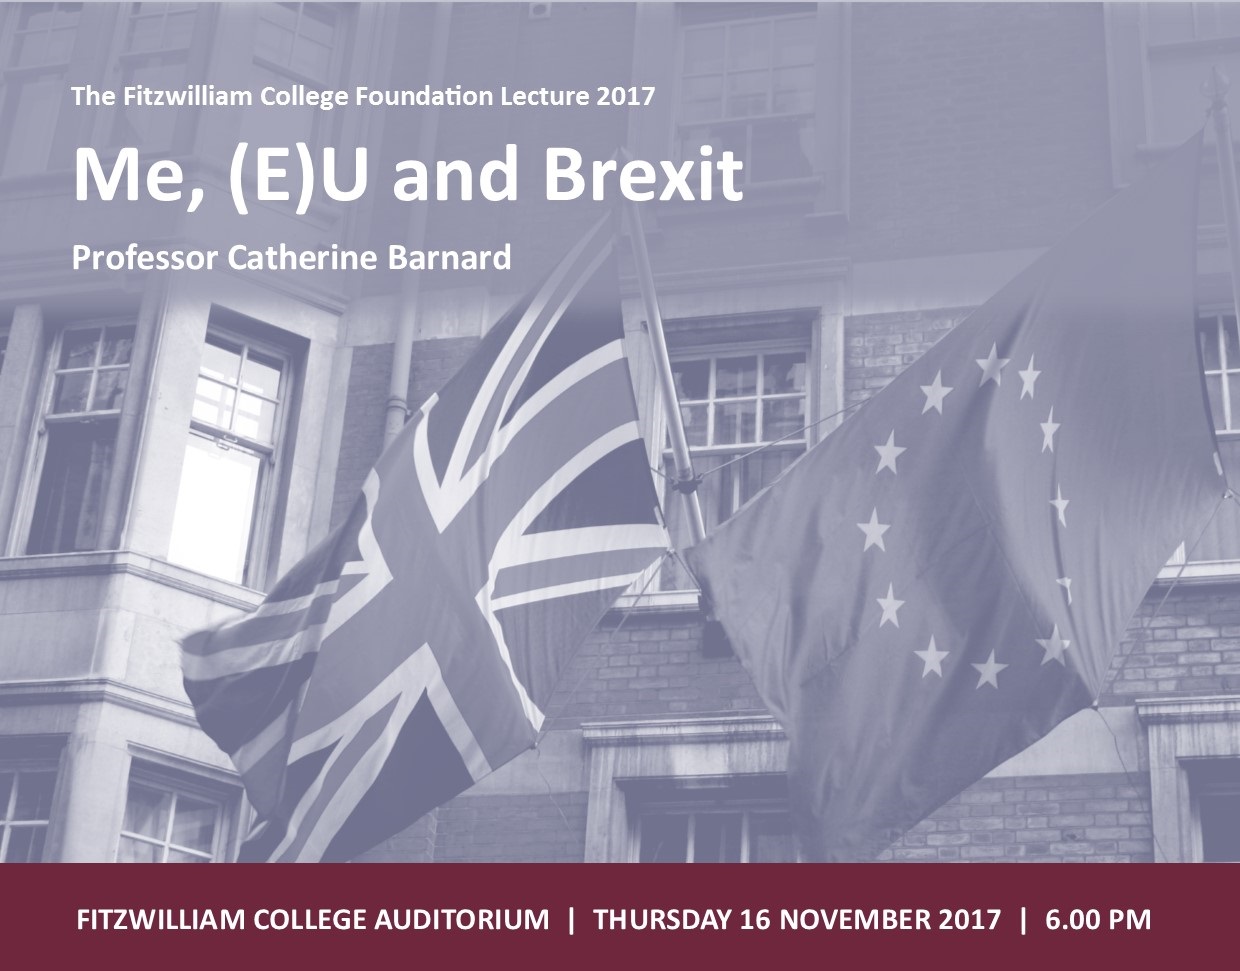 Fitzwilliam College Foundation Lecture 2017 - Professor Catherine Barnard - Me, E(U) and Brexit's image